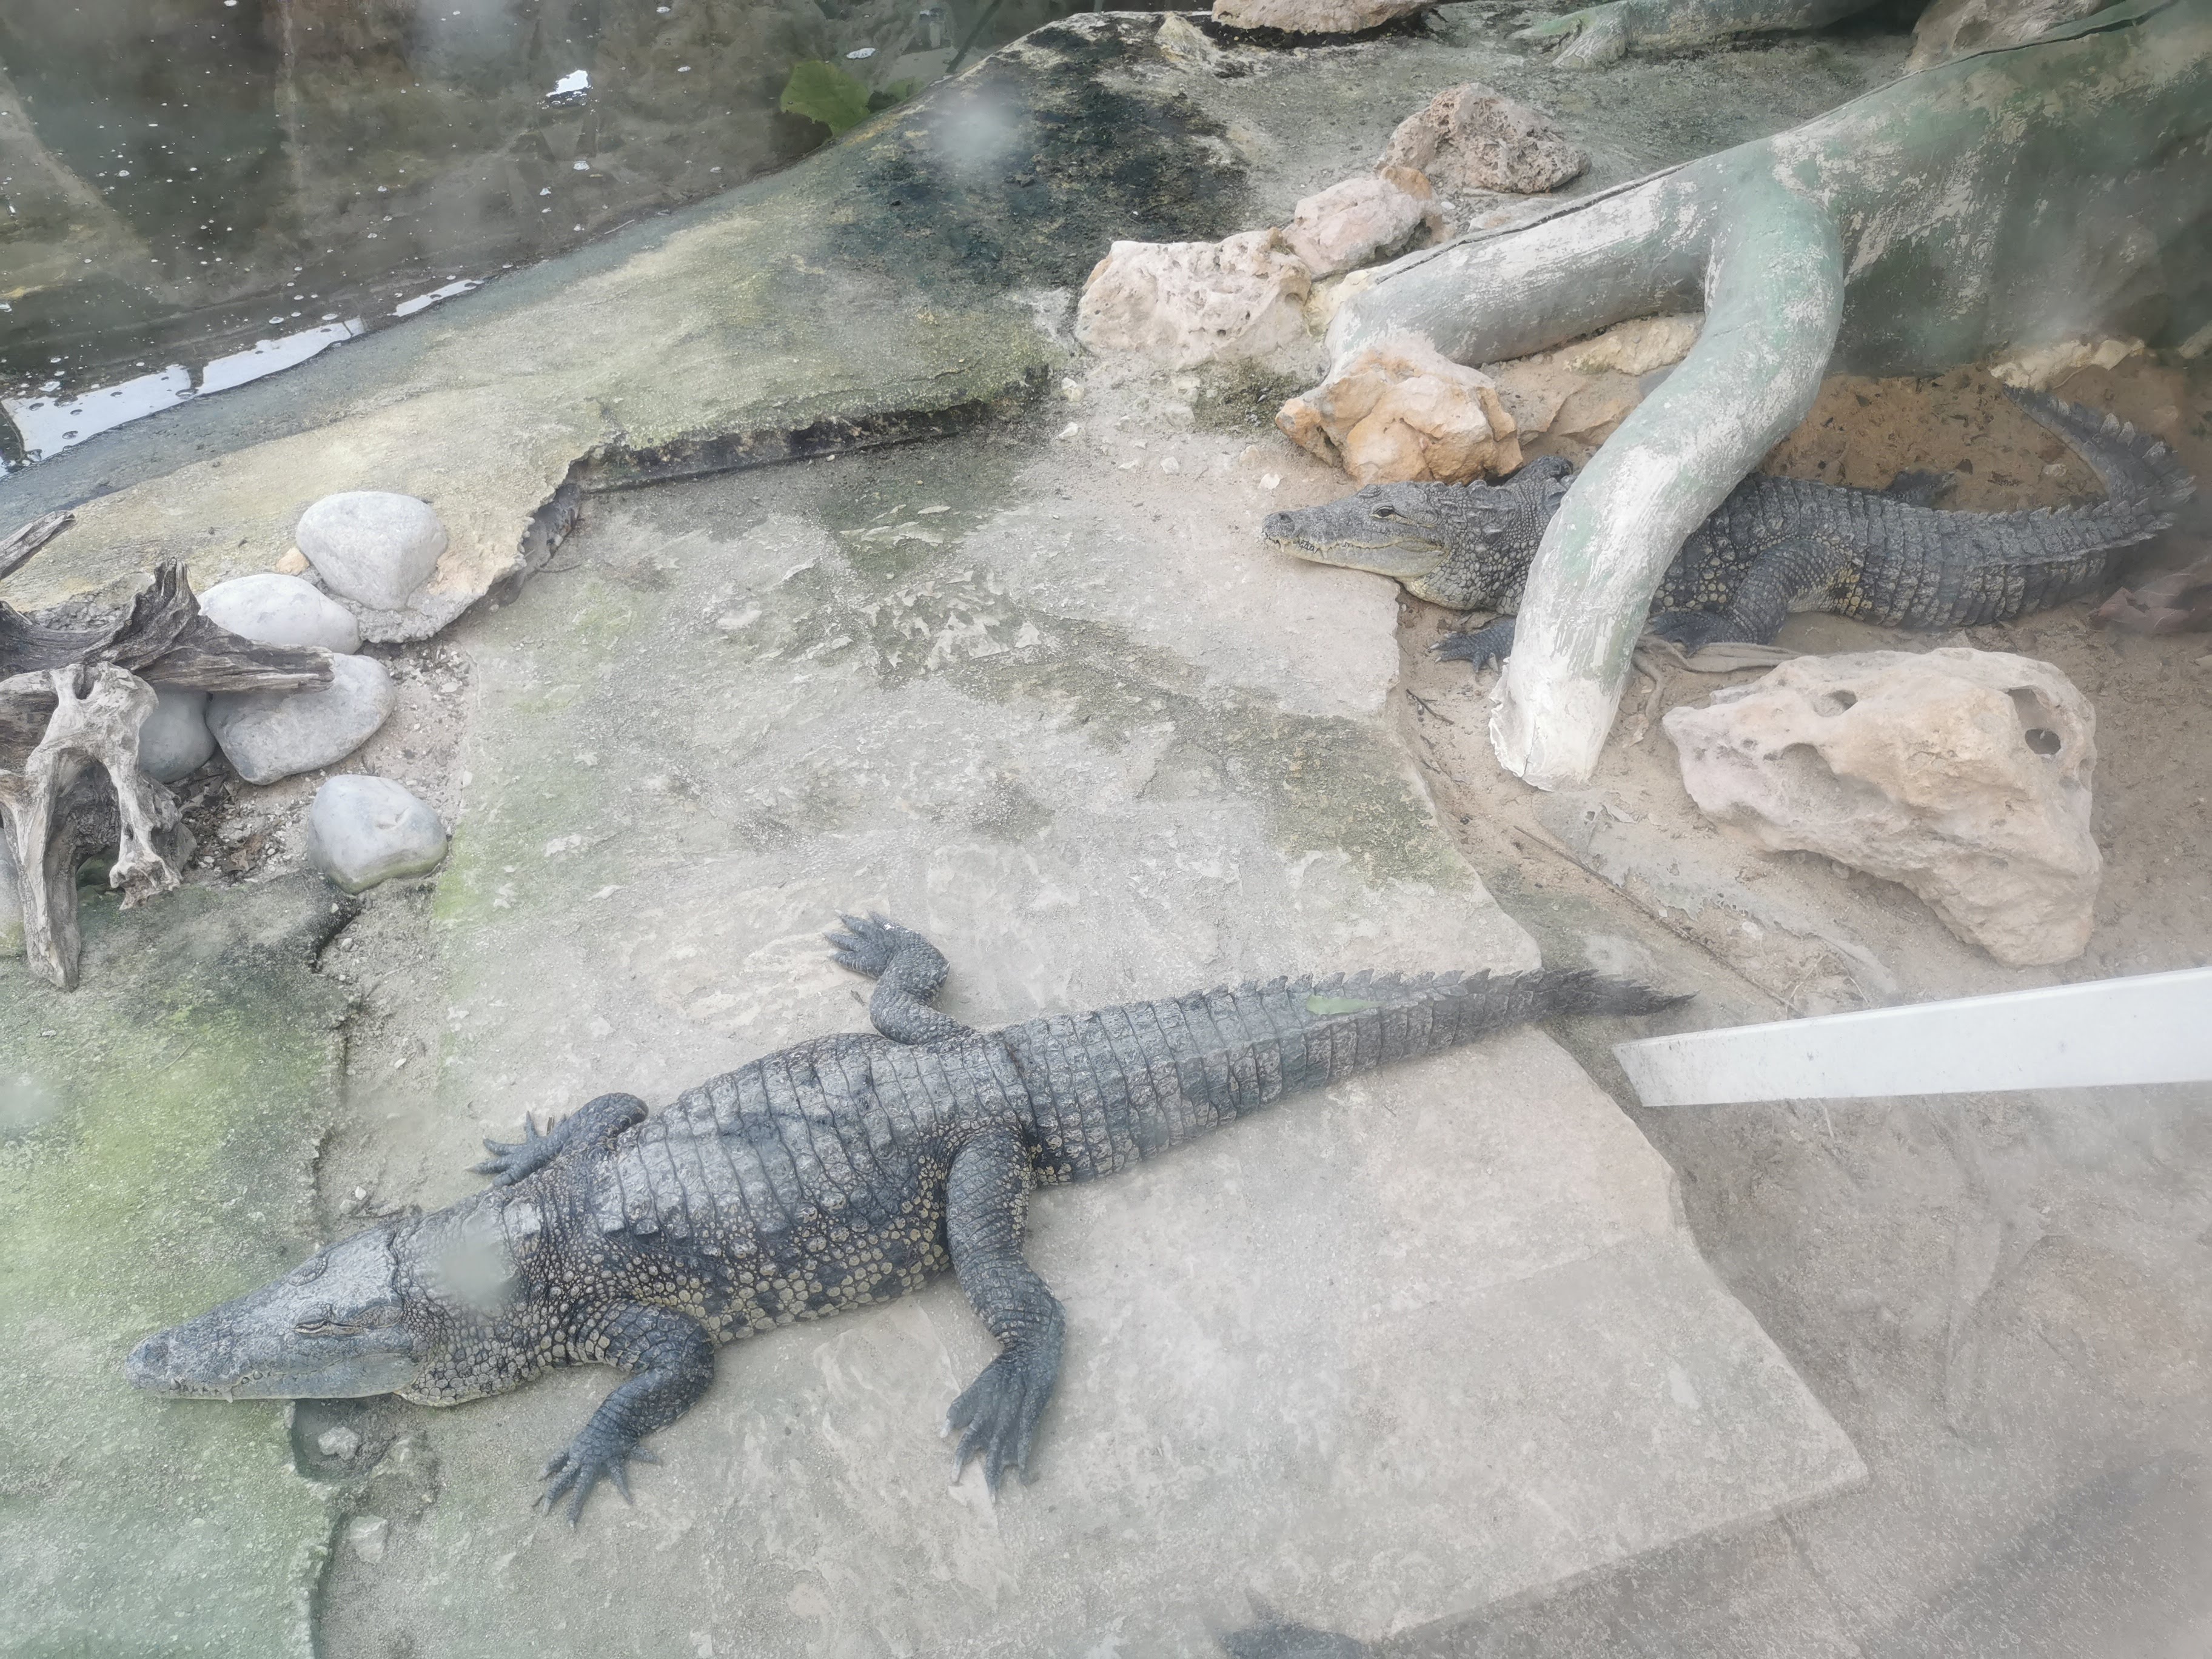 A legdurvább egyedei a parknak, a krokodilok. Nem nílusi, valami miniatűr fajta.